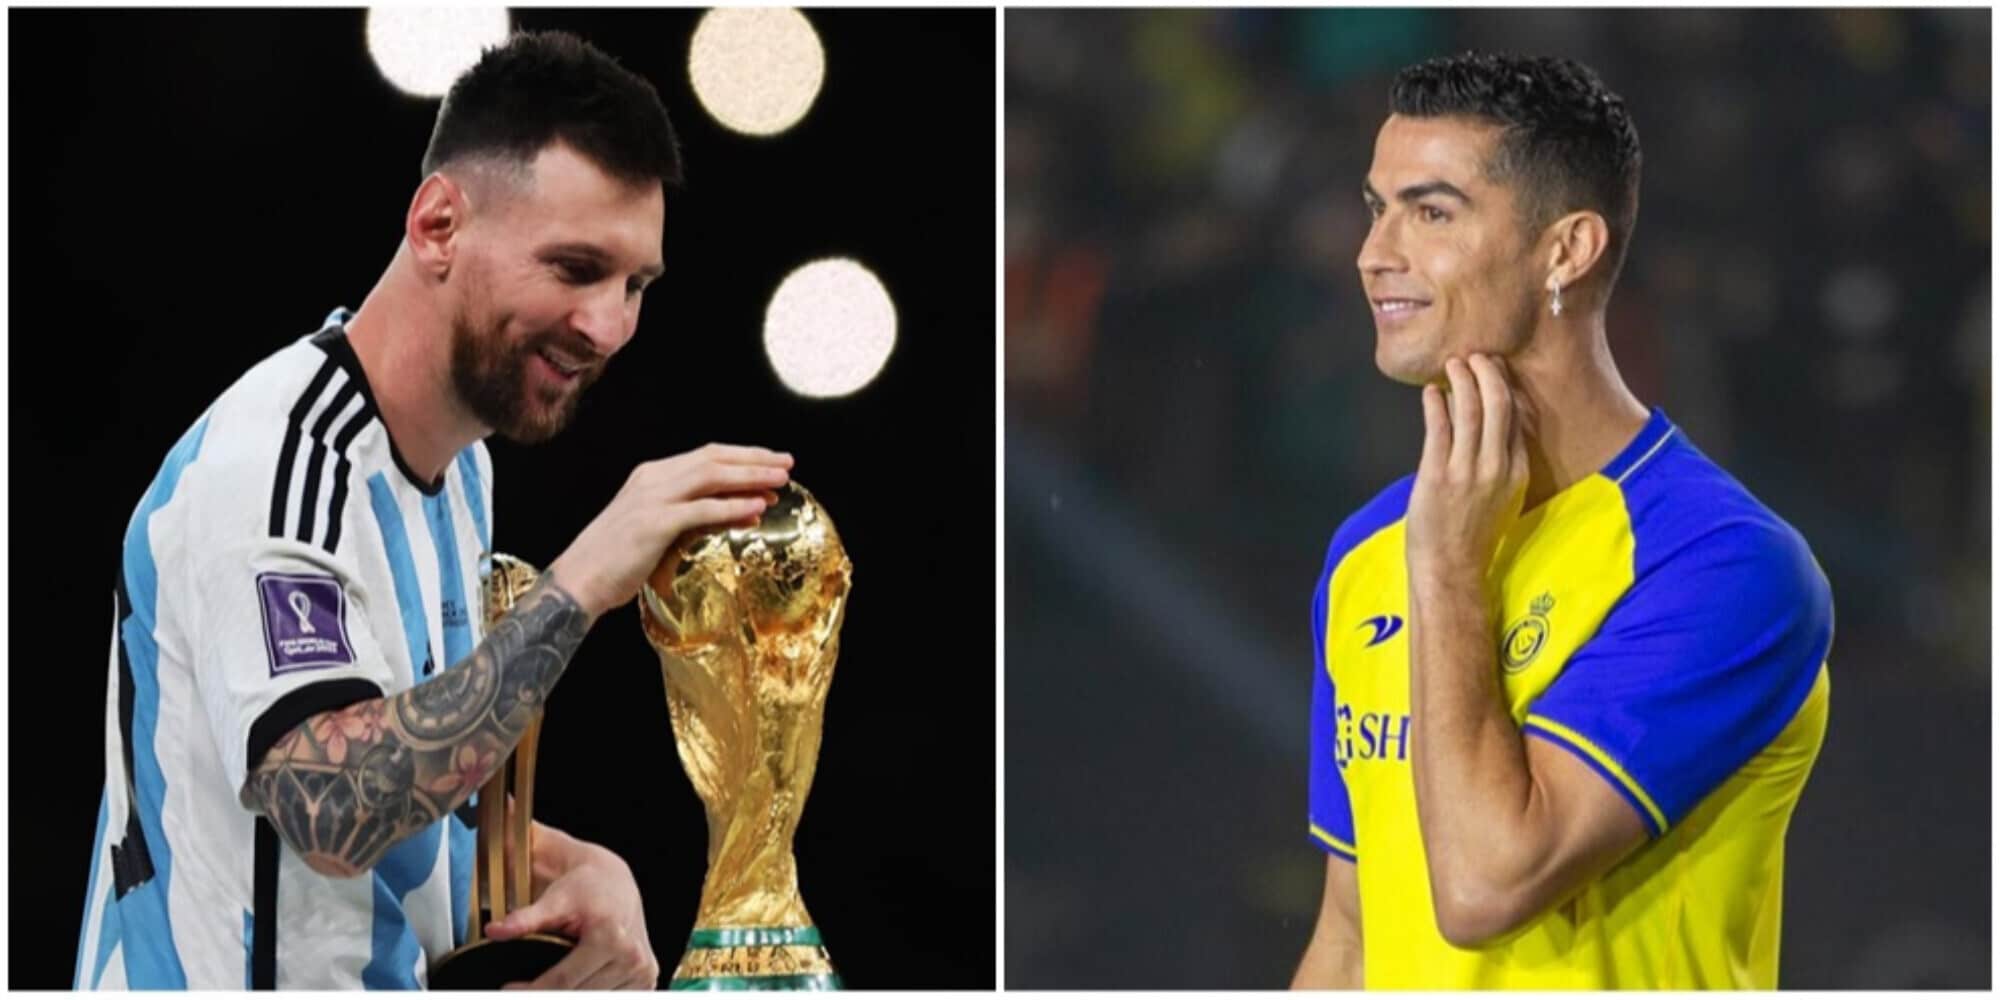 CdS – “Messi giocherà con Ronaldo in Arabia. Si sa già la squadra”. La clamorosa indiscrezione